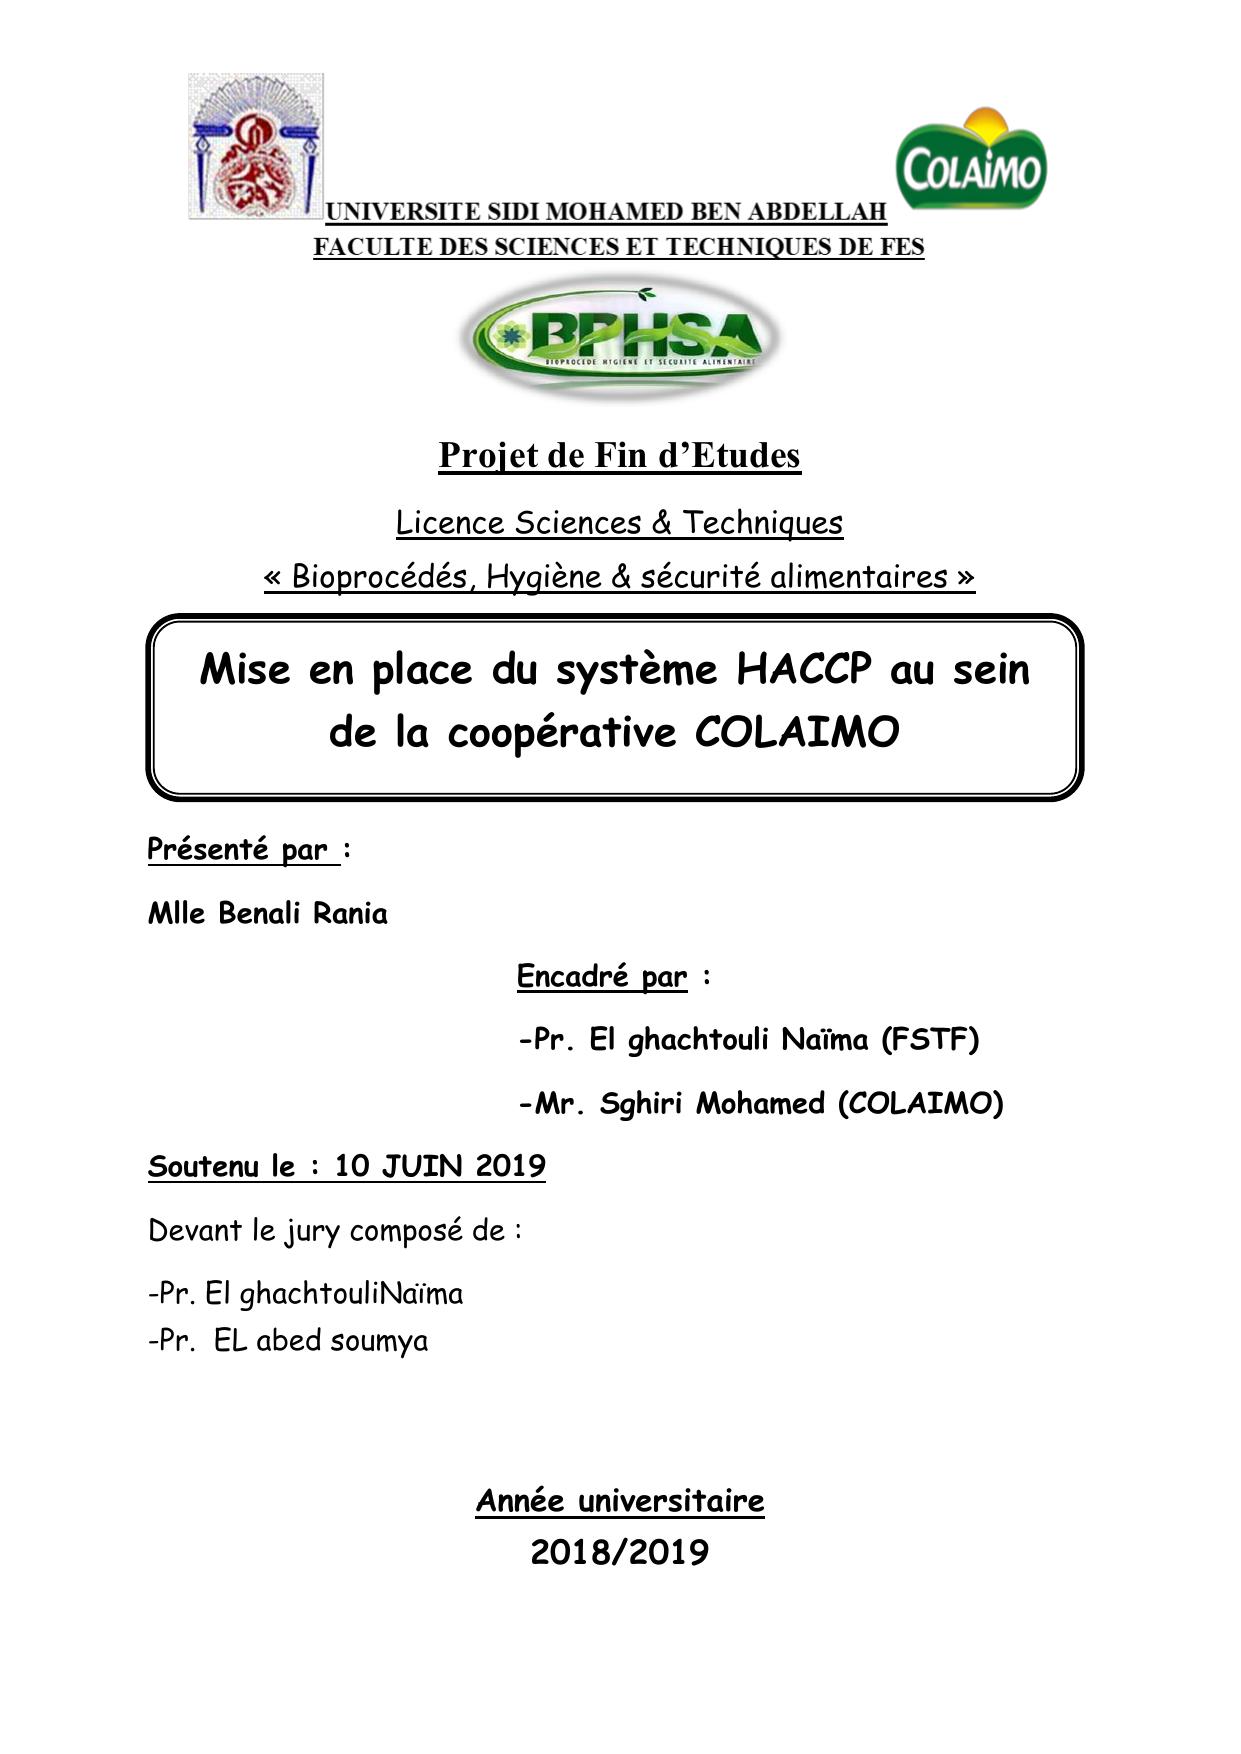 Mise en place du système HACCP au sein de la coopérative COLAIMO